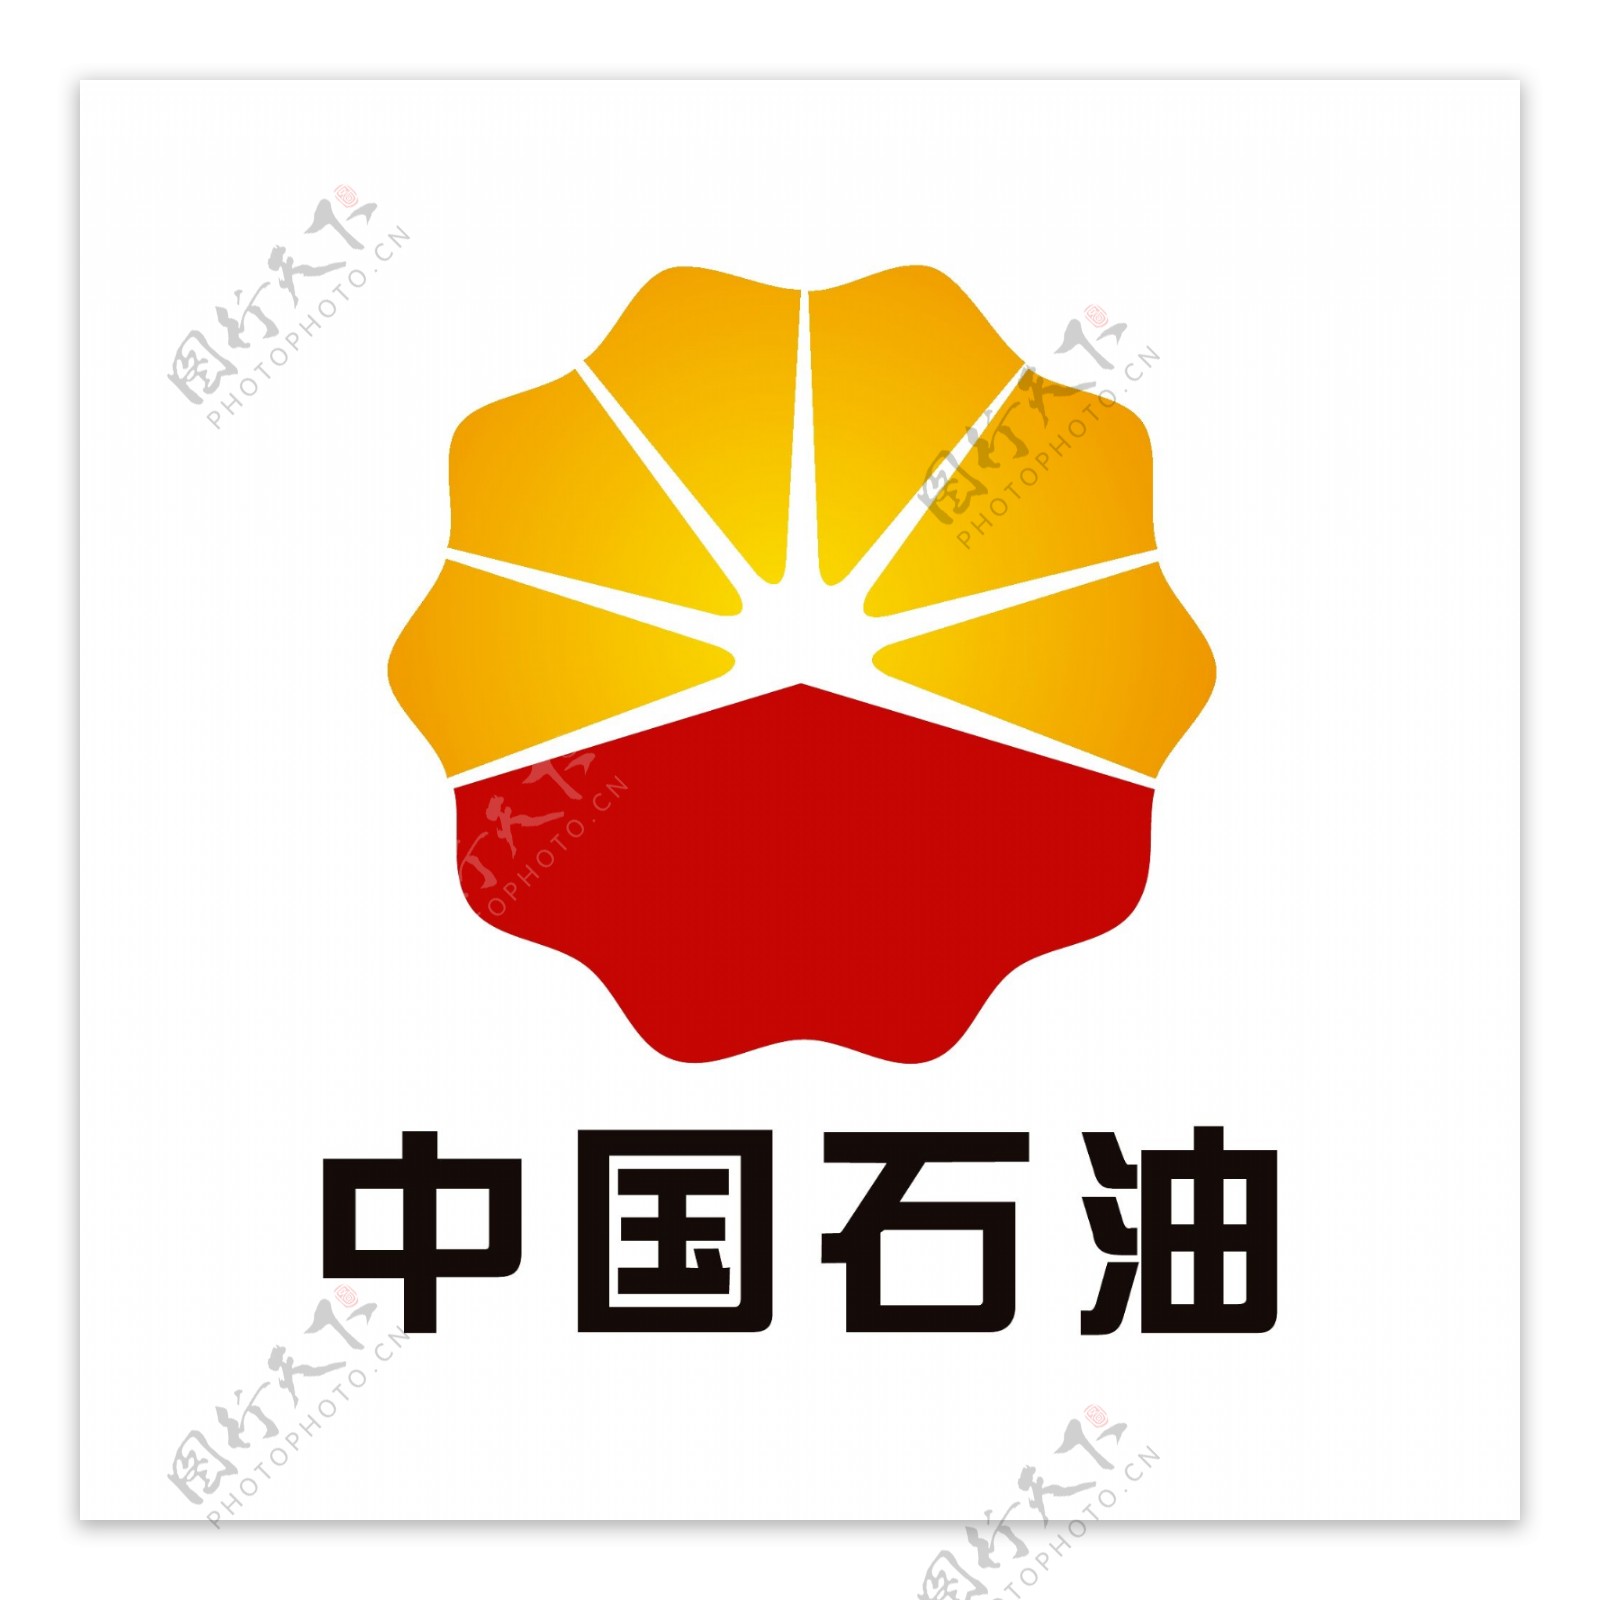 中国石油石化logo